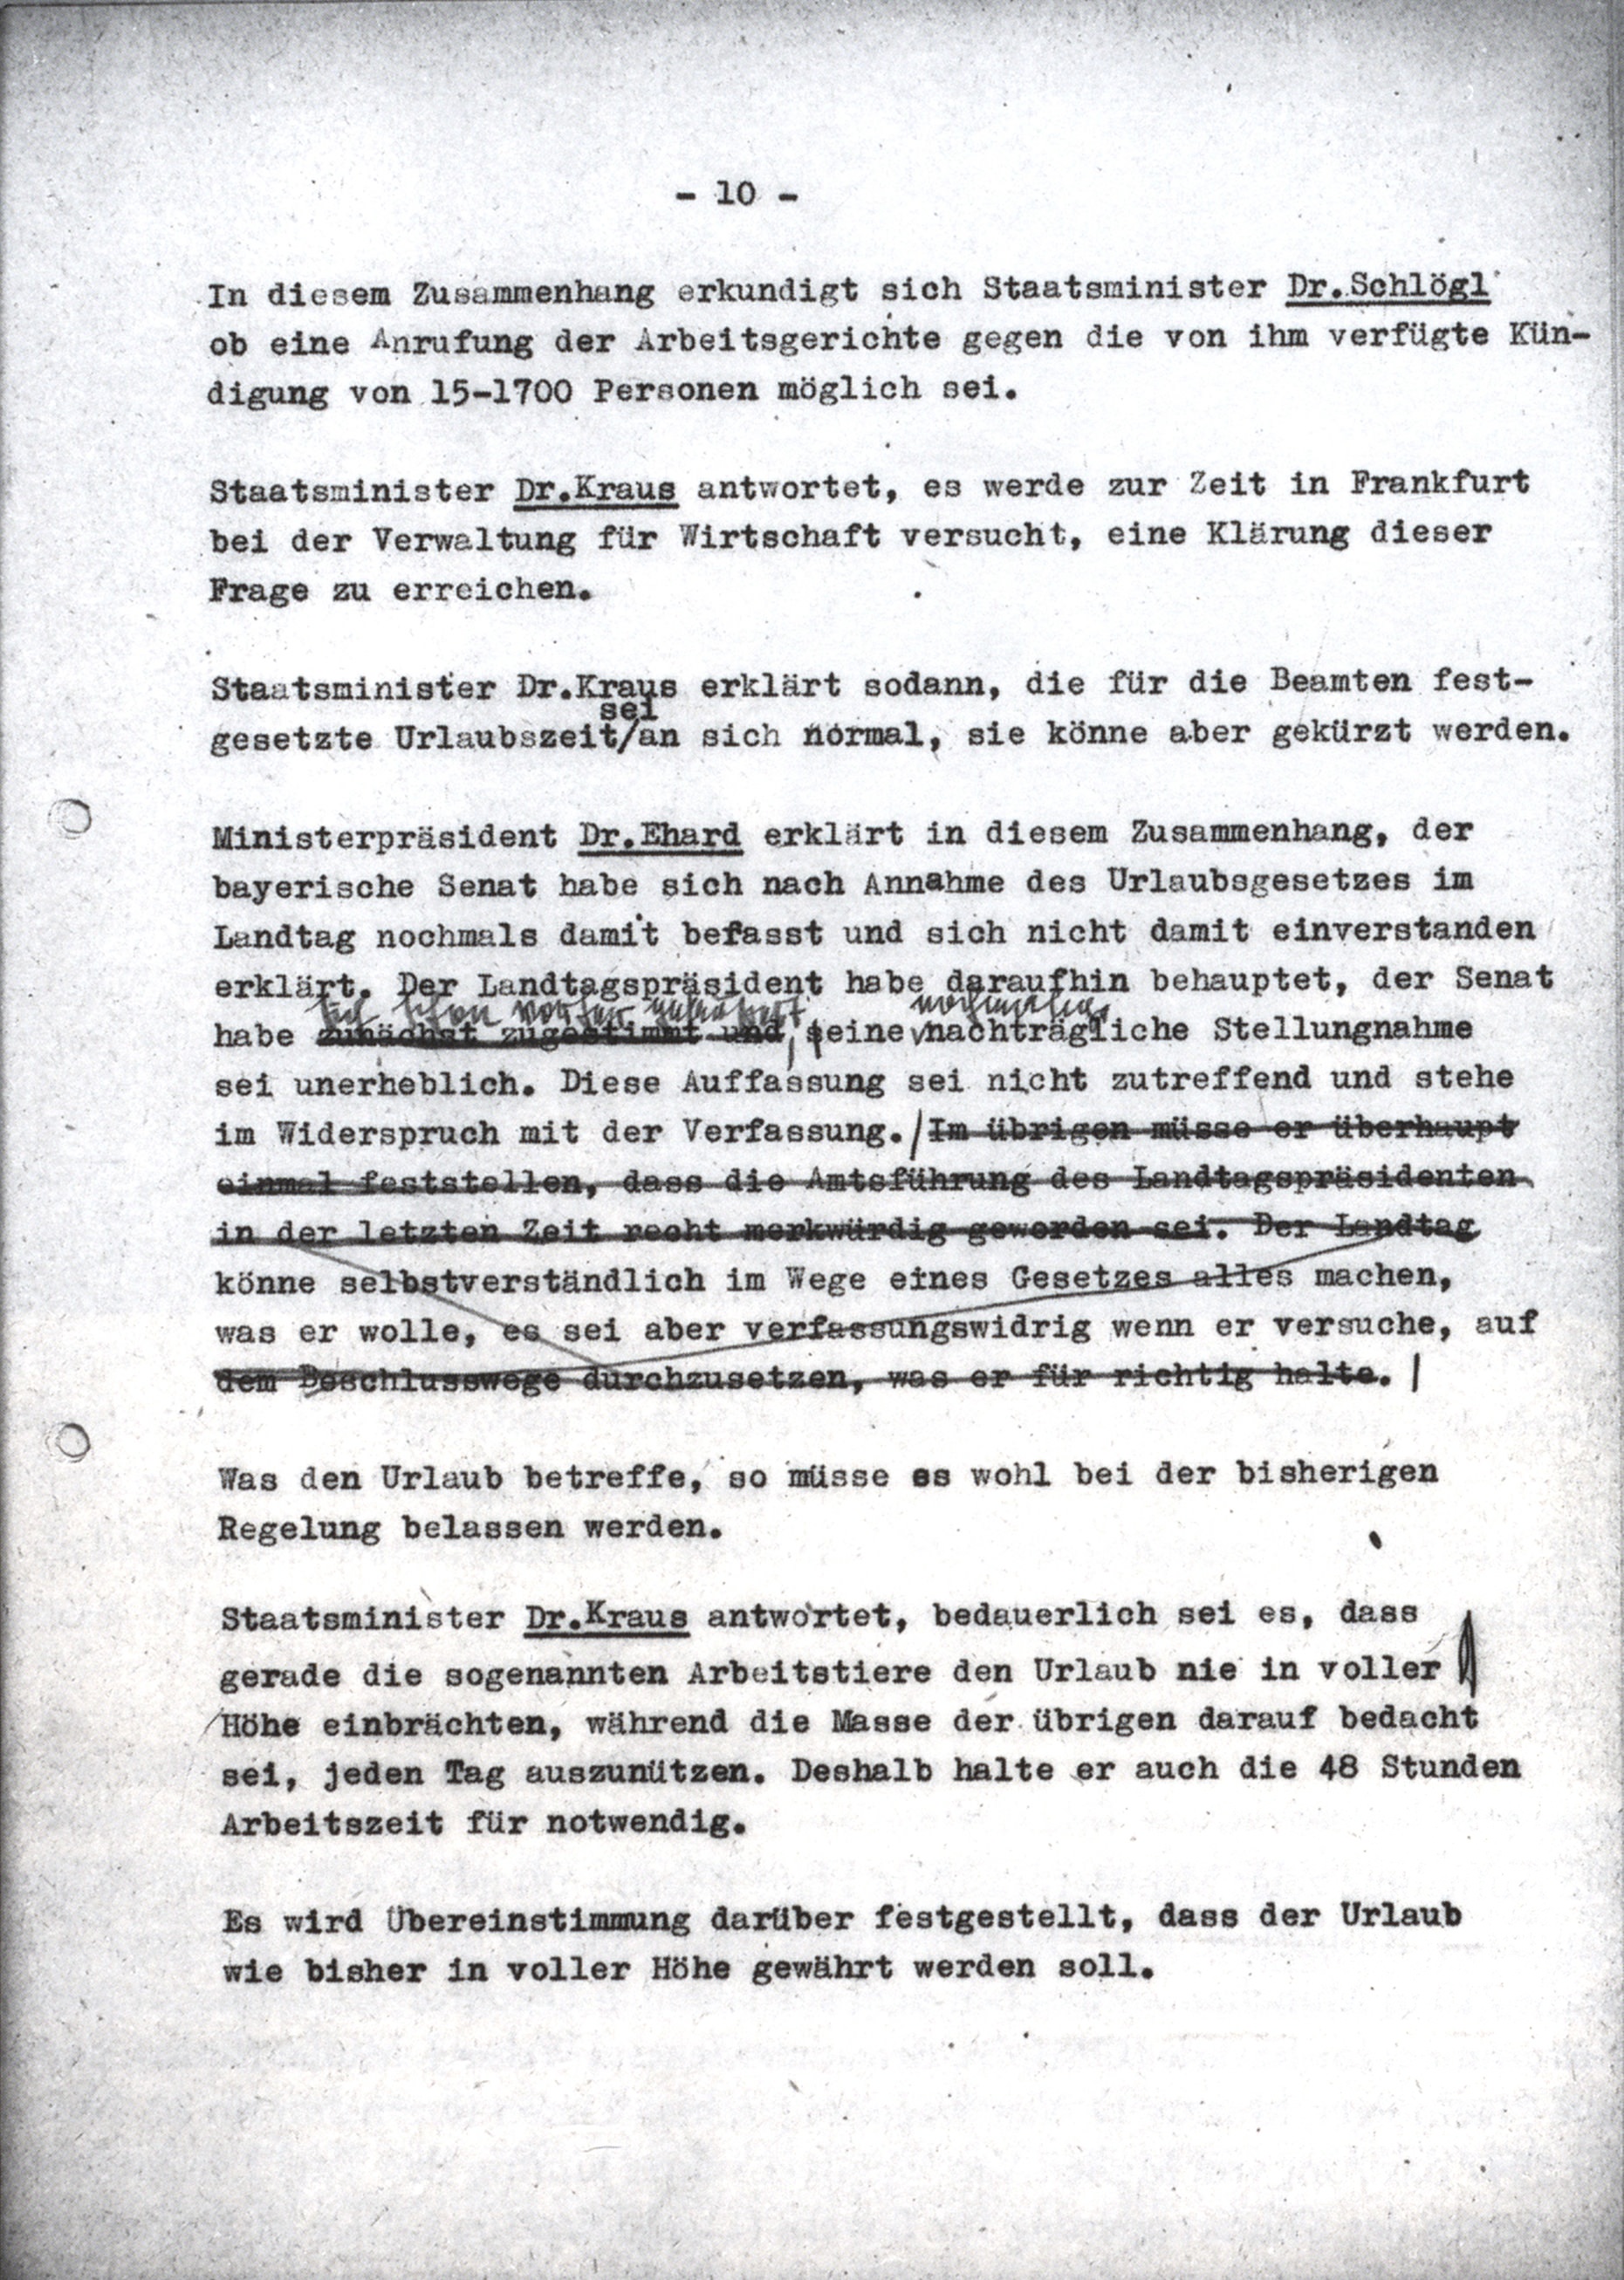 Die Korrekturen, die Ministerpräsident Ehard am Entwurf des Ministerratsprotokolls vom 2. August 1948 (vgl. Nr. 39 TOP XI, S. 607–609) vornahm, bevor es vervielfältigtan die Kabinettsmitglieder ging, sind in zweierlei Hinsicht typisch. Viele seiner Änderungen im sogenannten Registraturexemplar, in dem die Entwürfe gesammelt vorliegen, lassen erkennen, daß dem Juristen Ehard der Text oft nicht präzise genug formuliert war. Im vorliegenden Fall betraf dies die Mitwirkung des Bayerischen Senats an der Gesetzgebung<lb/> Ferner formulierte der Ministerpräsident immer wieder Passagen um, beziehungsweise strich sie wie in diesem Falle ganz aus dem Protokoll, die eine gewisse Schärfe vor allem in der Beurteilung von Personen, Institutionen und Vorgängen enthielten. Im vorliegenden Beispiel tilgte er auf diese Weise sein eigenes negatives Urteil über die Amtsführung von Landtagspräsident Michael Horlacher (CSU).<lb/> Hier läßt das Registraturexemplar erkennen, daß im Verlauf der Sitzungen der Ton mitunter schärfer war, als es der durch redaktionelle Korrekturen vor allem Ehards geglättete endgültige Protokolltext erkennen läßt, dessen Ton stets sachlich und nüchtern ist. Daher sehen die Editionsrichtlinien vor, wesentliche Korrekturen des Ministerpräsidenten sowie des Generalsekretärs des Ministerrats stets in den Anmerkungen wiederzugeben. <br/> Nachweis: Bayerisches Hauptstaatsarchiv, StK-MinRProt 11